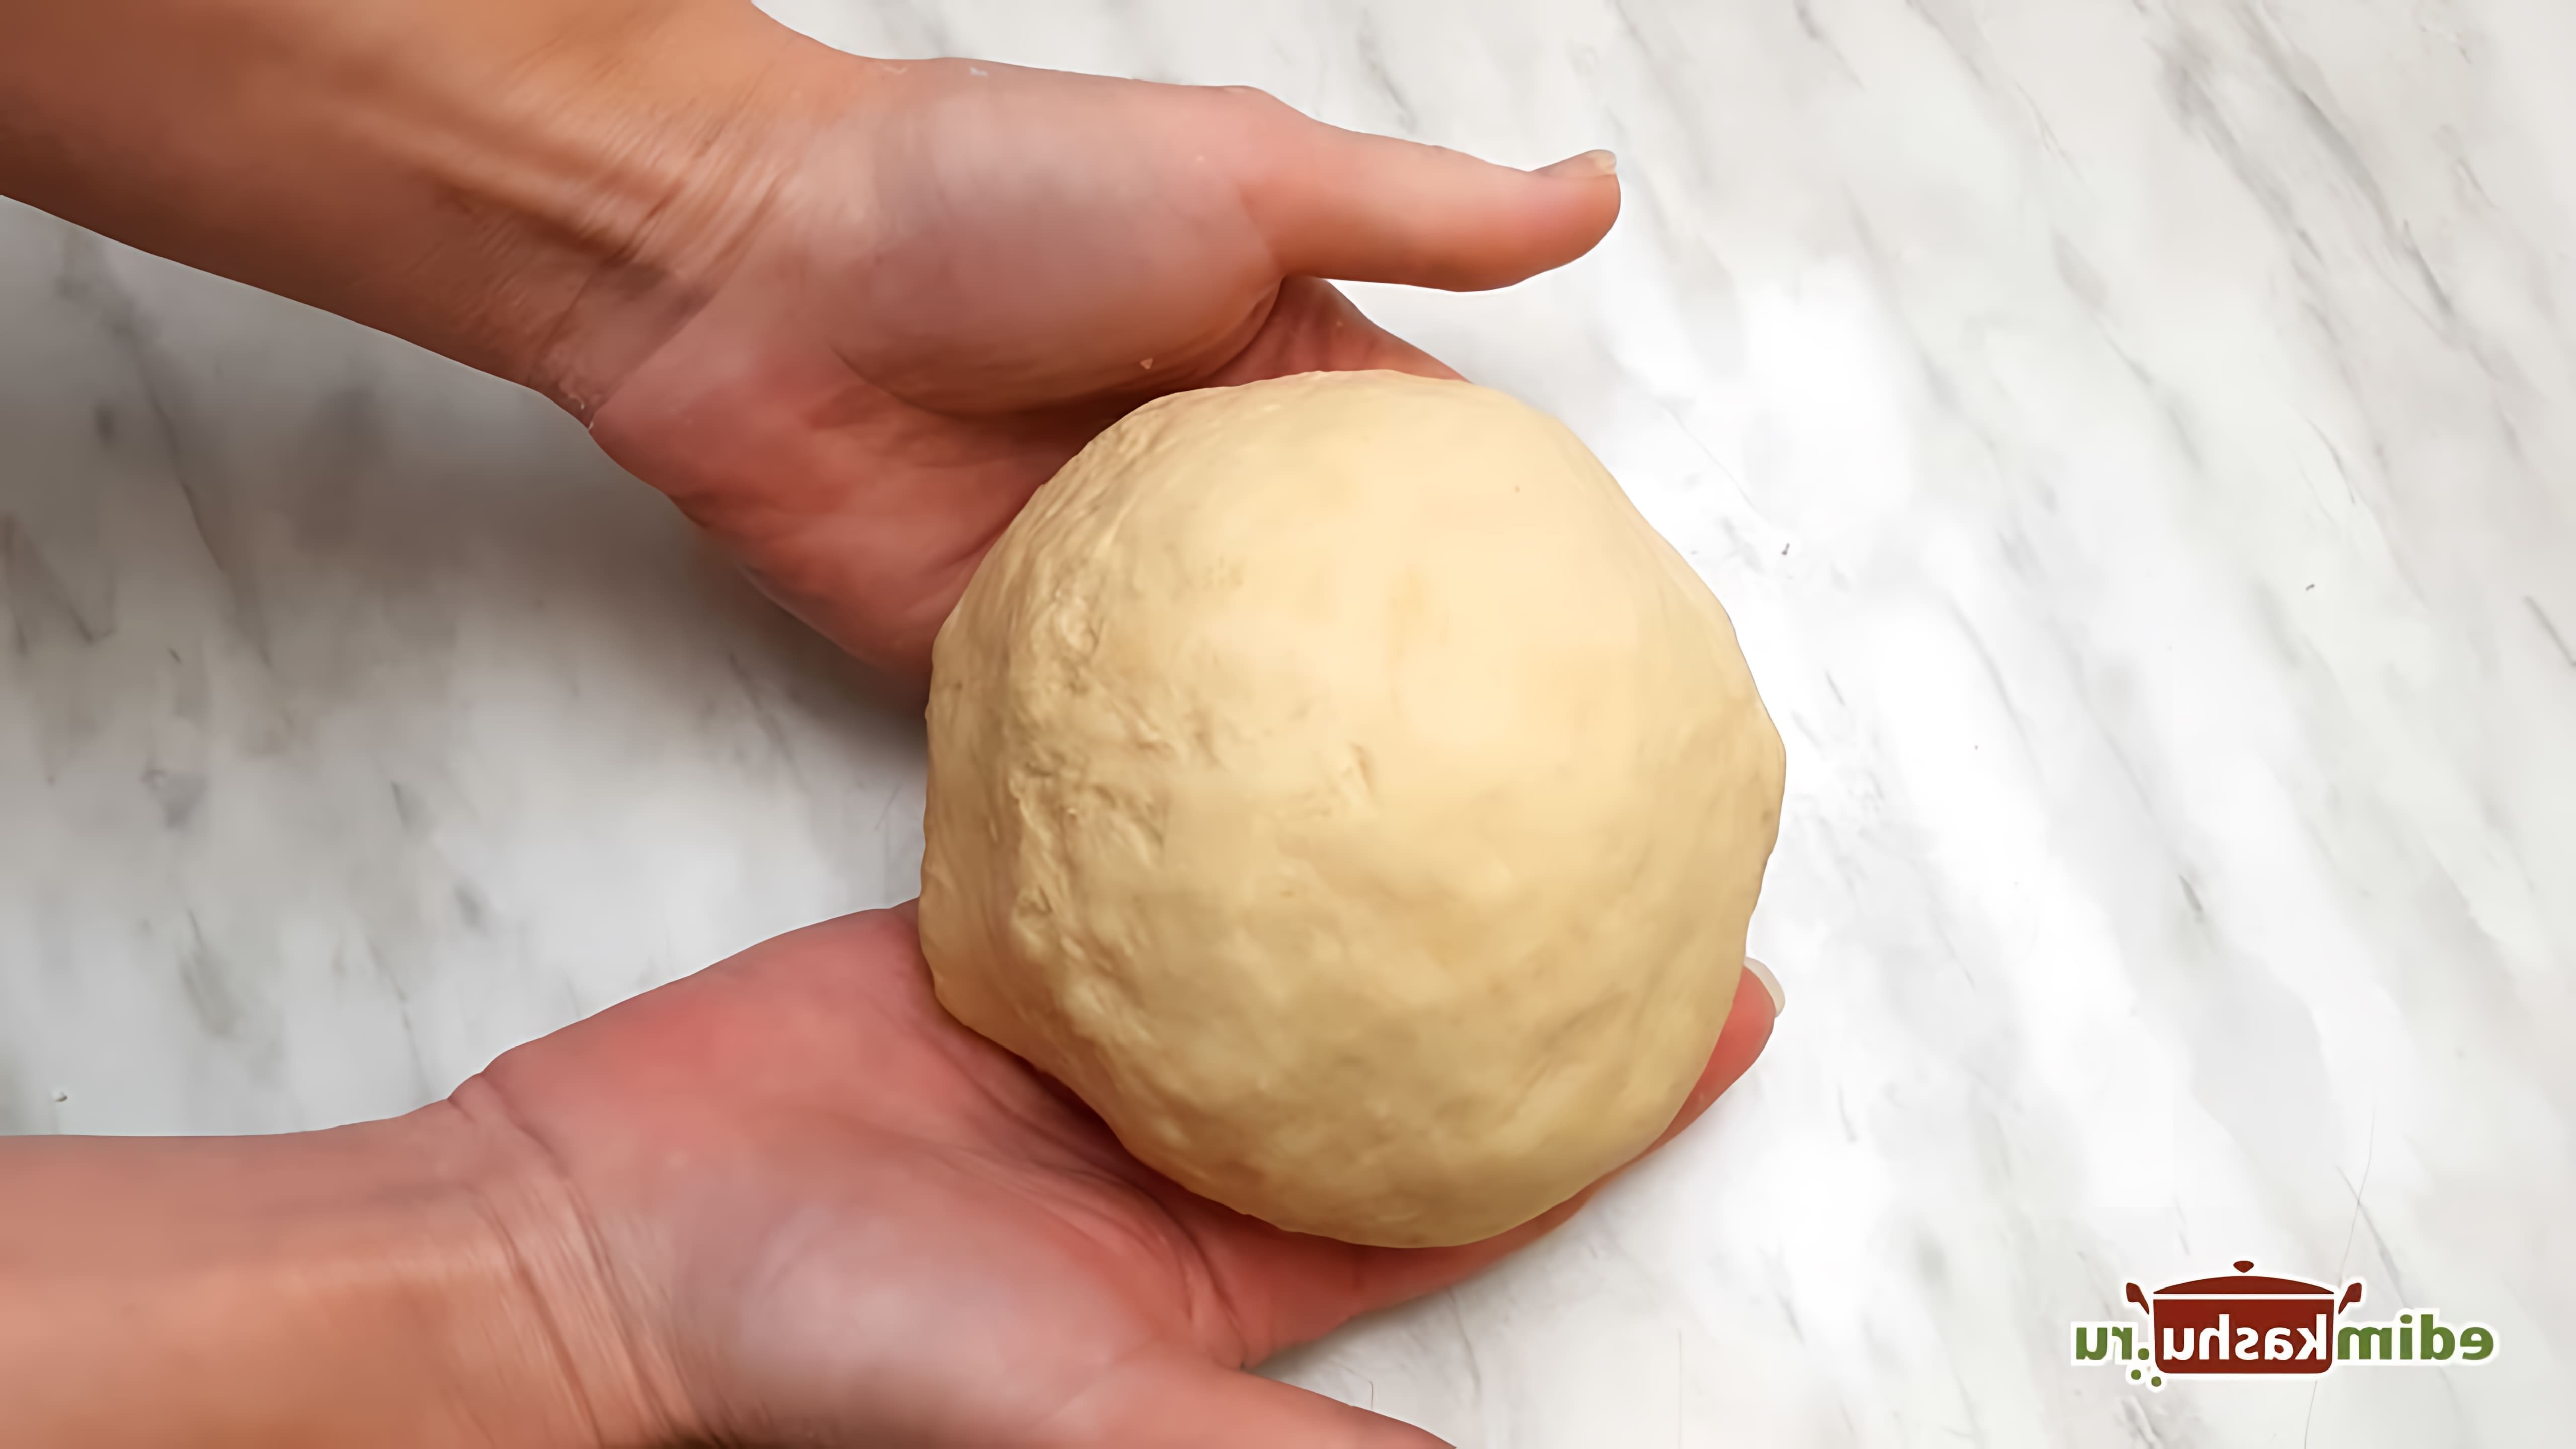 В данном видео демонстрируется процесс приготовления заварного пельменного теста без яиц